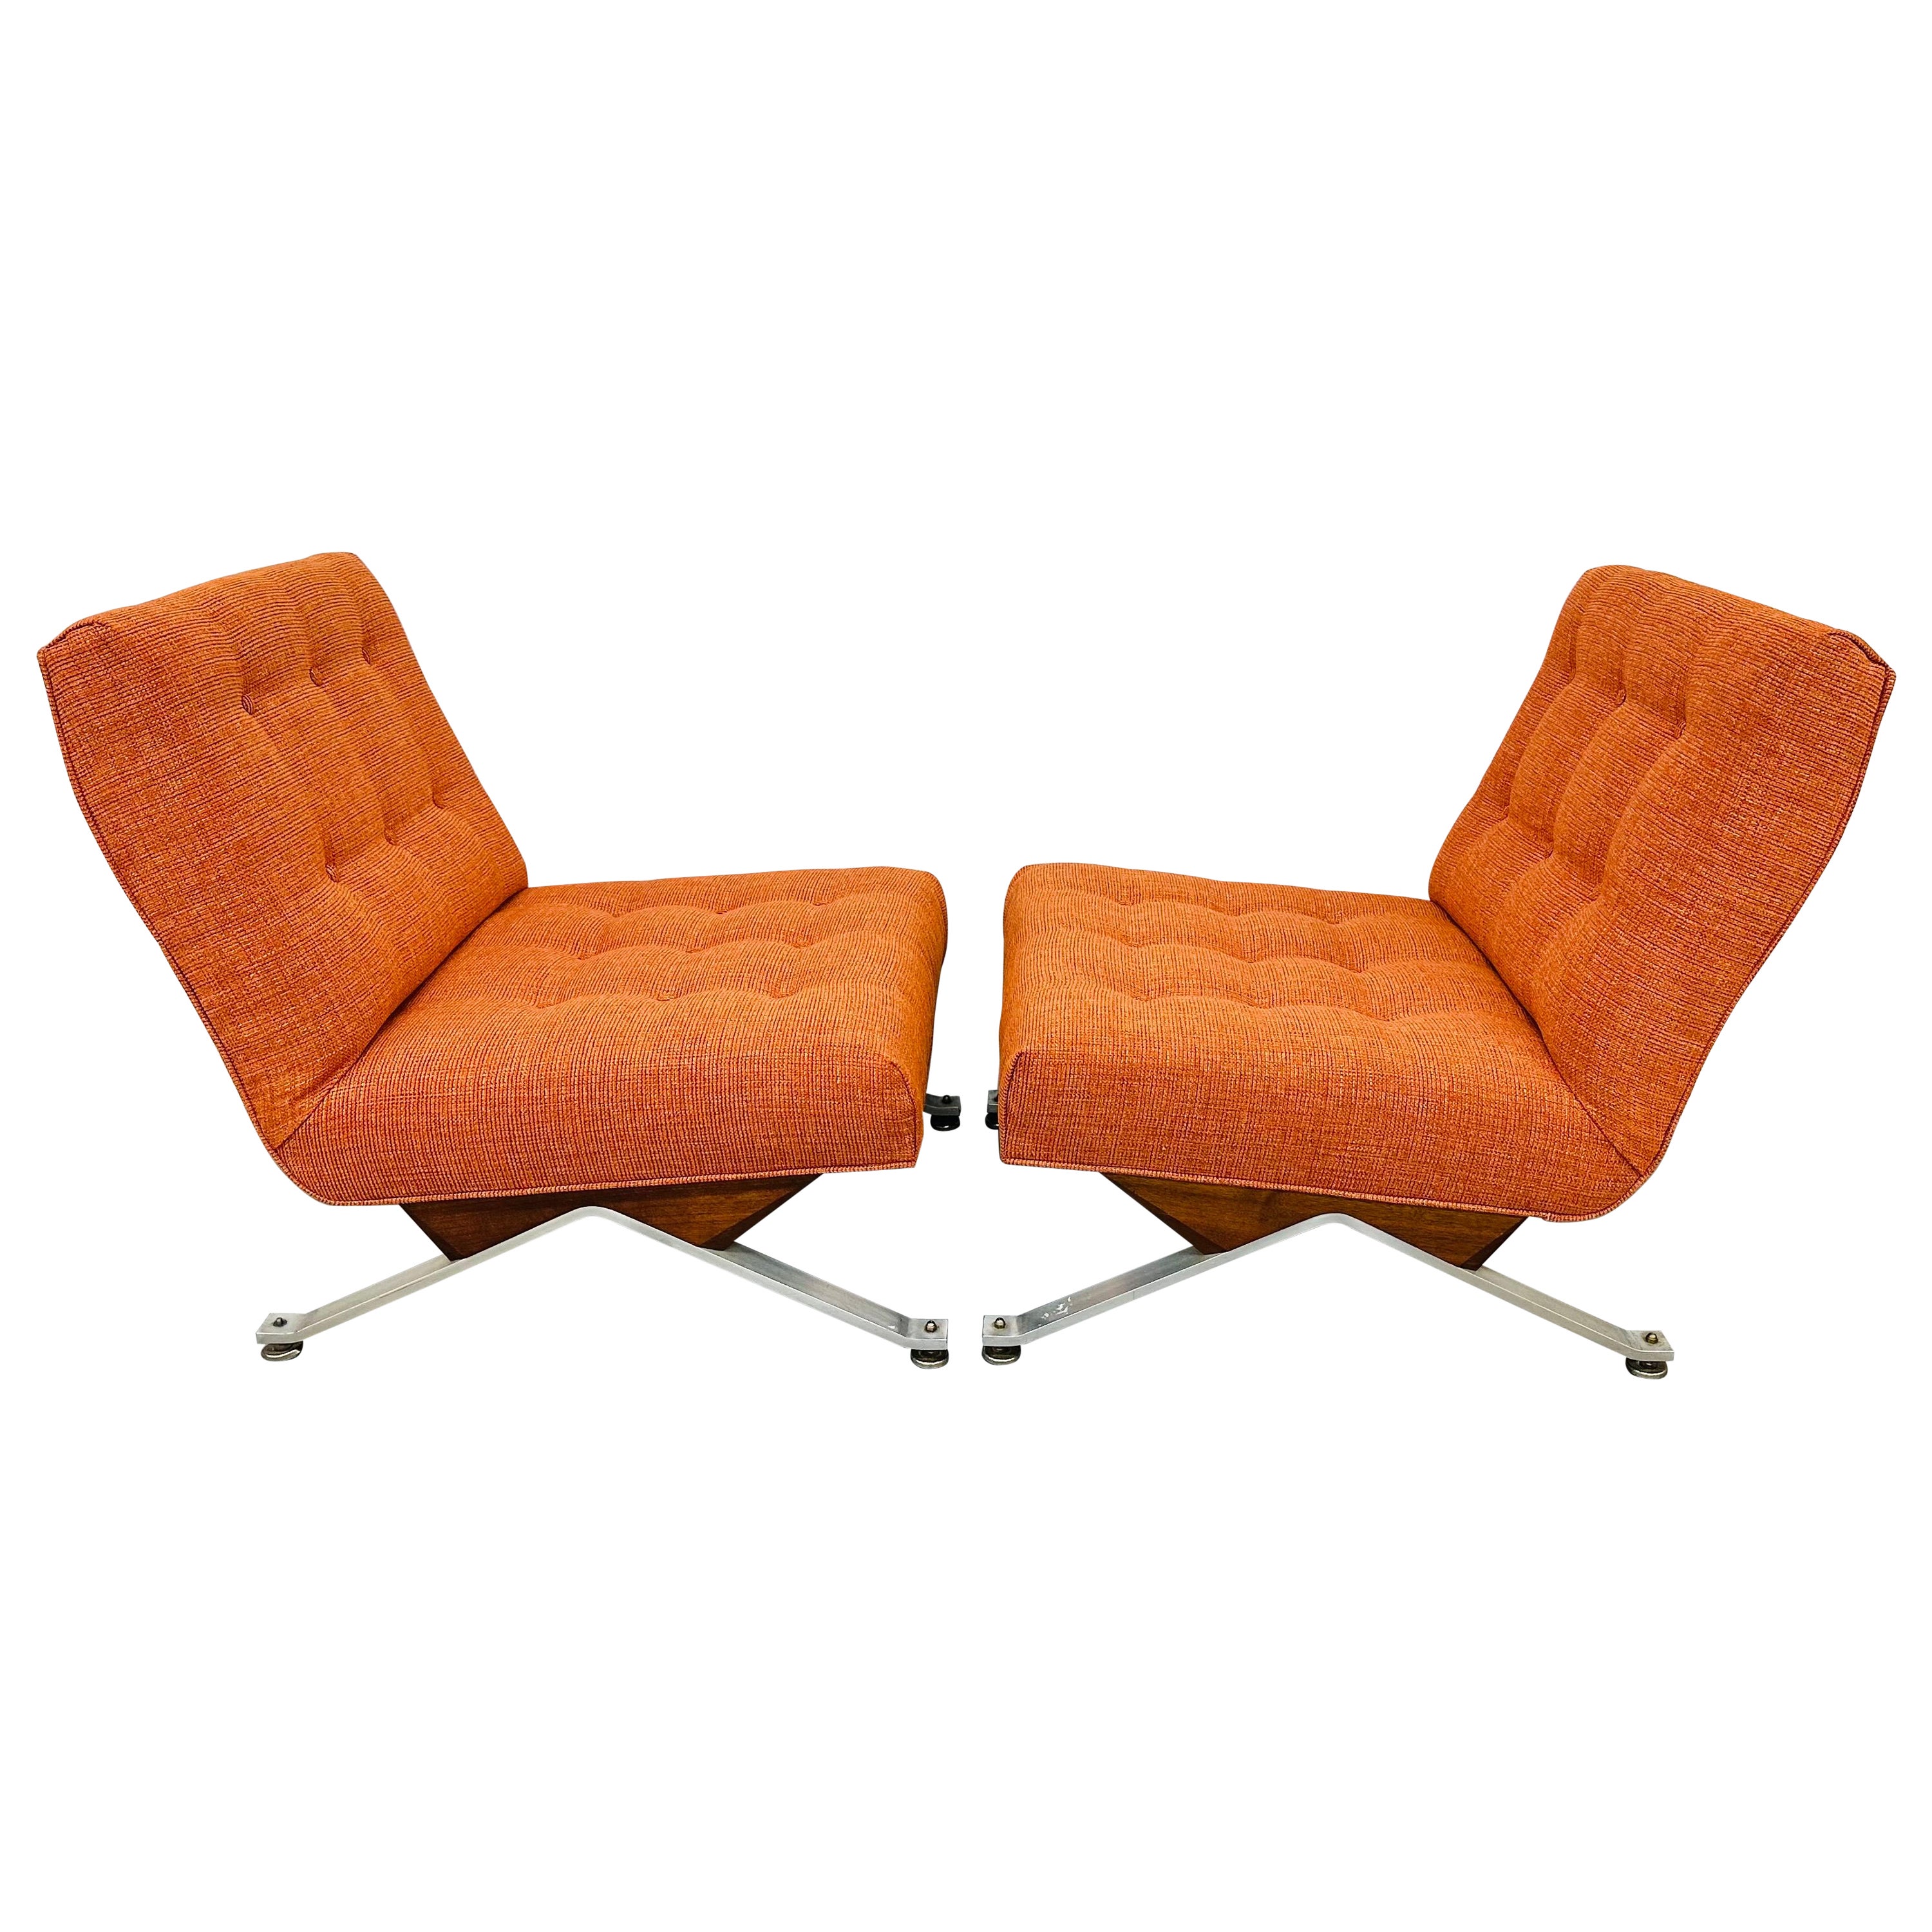 Orangefarbene Sessel ohne Armlehne von Mid-Century Modern - 2er-Set